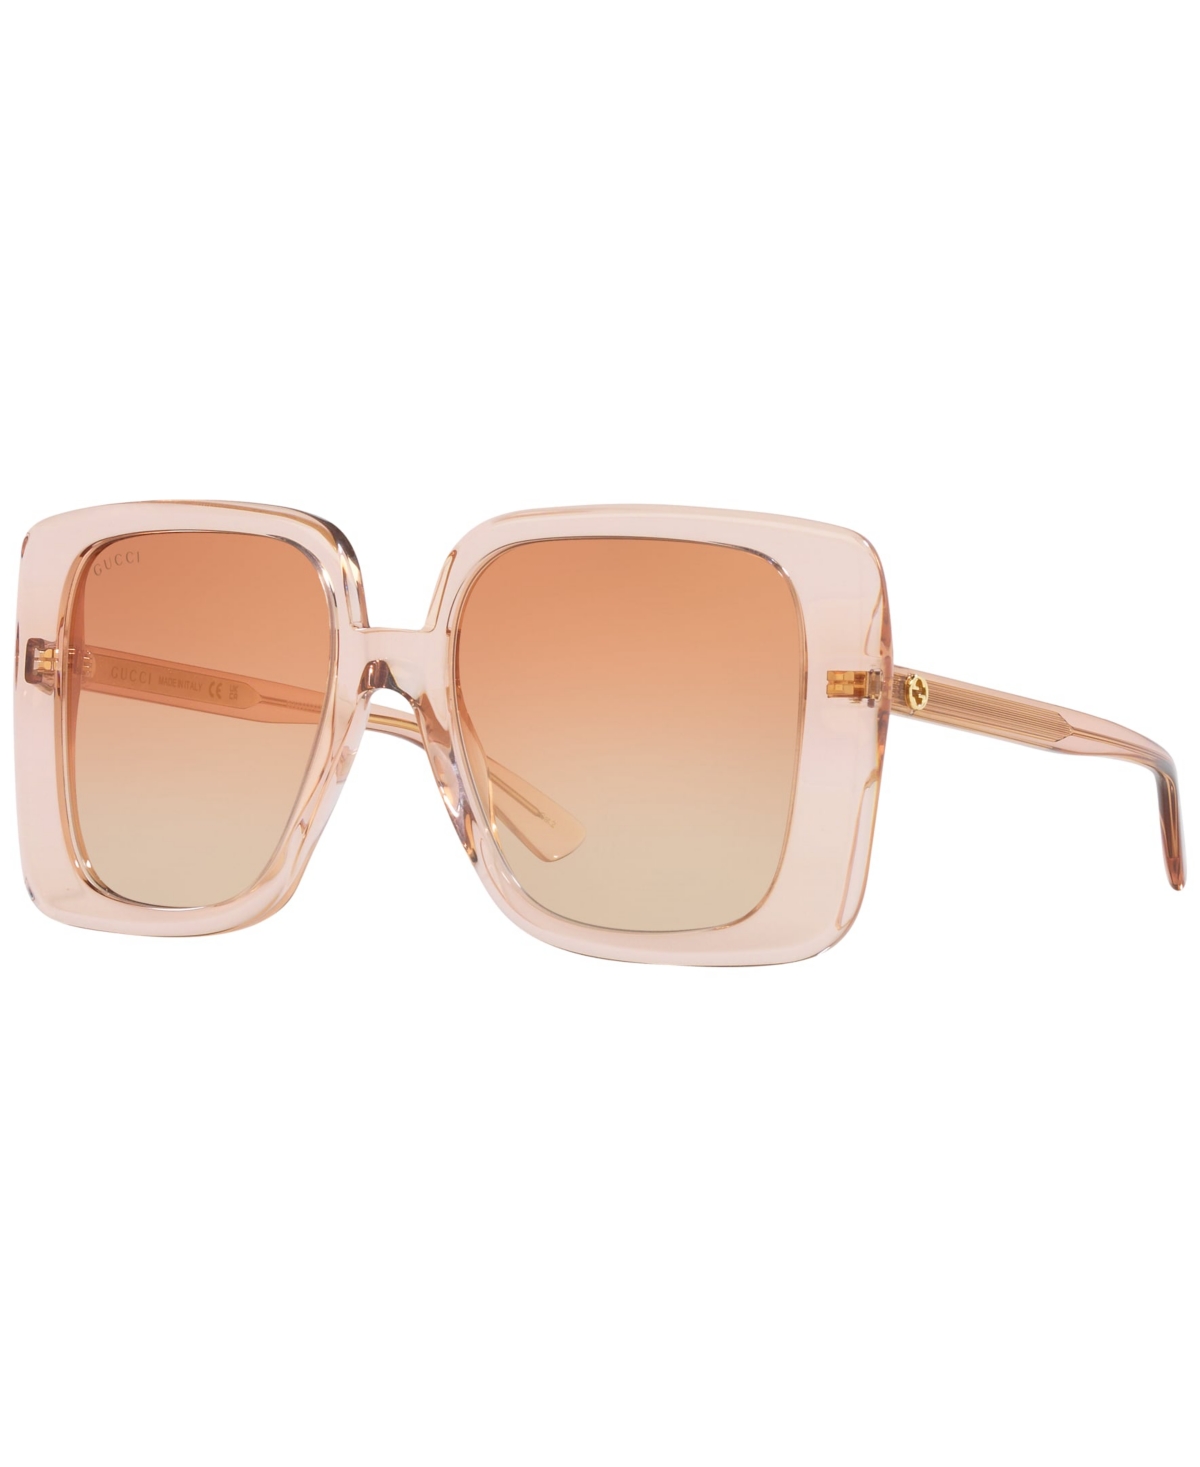 Gucci Women's Gg1314s Sunglasses, Mirror In Light Brown